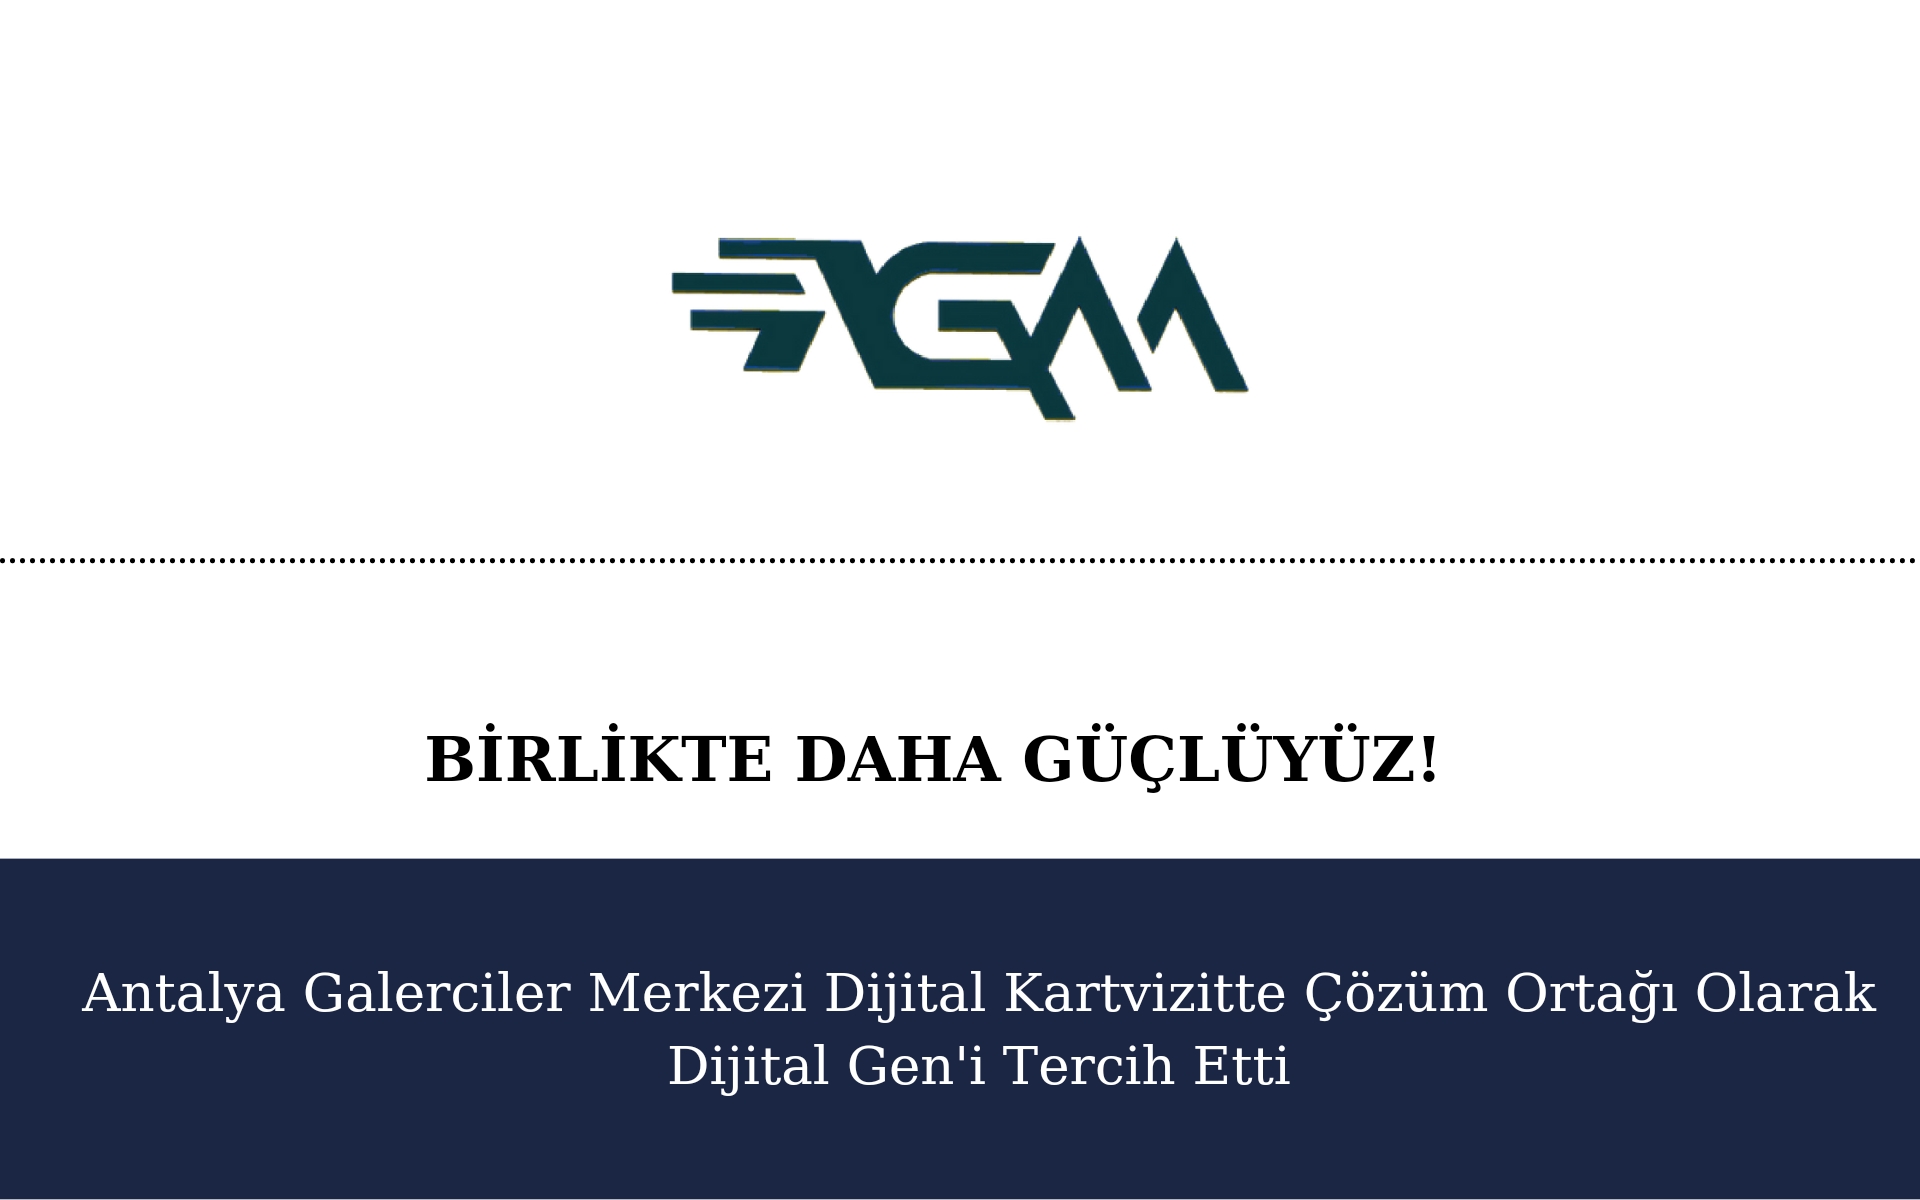 Antalya Galericiler Merkezi Dijital Katalogda Çözüm Ortağı Olarak Dijital Gen’i Tercih Etti!